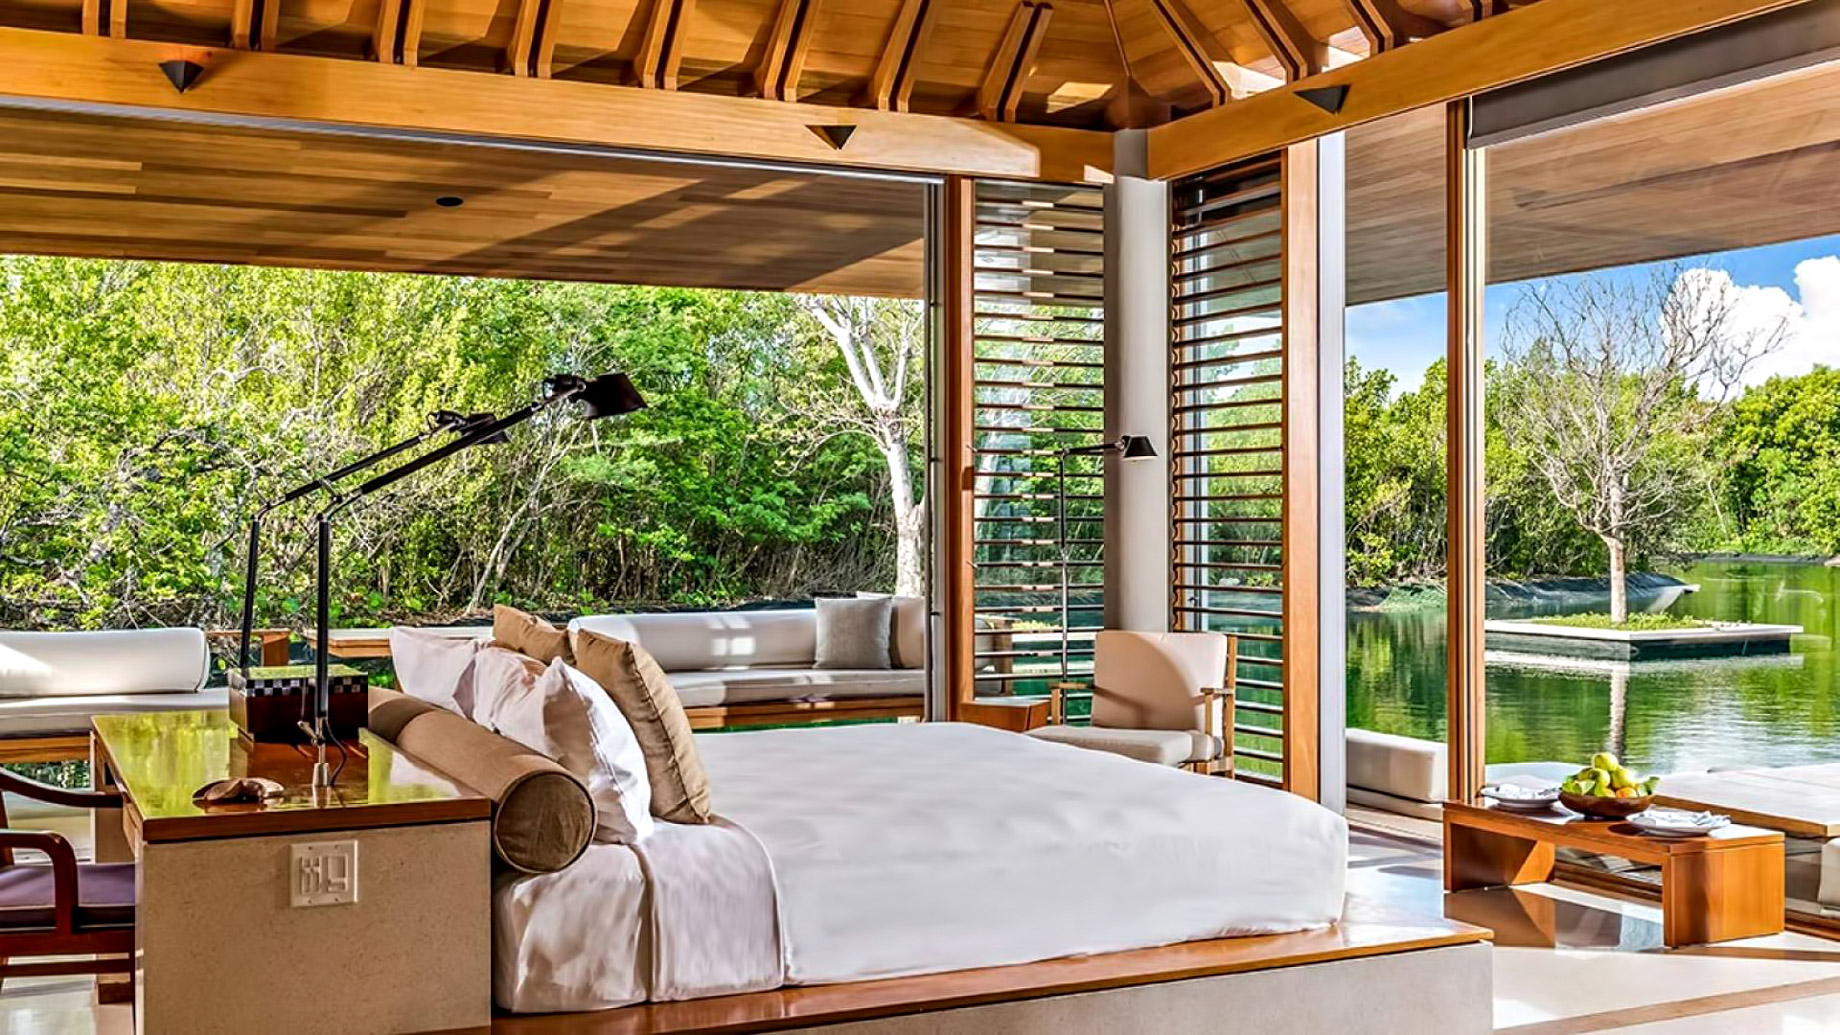 Amanyara Resort - Providenciales, Turks and Caicos Islands - 3 Bedroom Tranquility Villa Bedroom